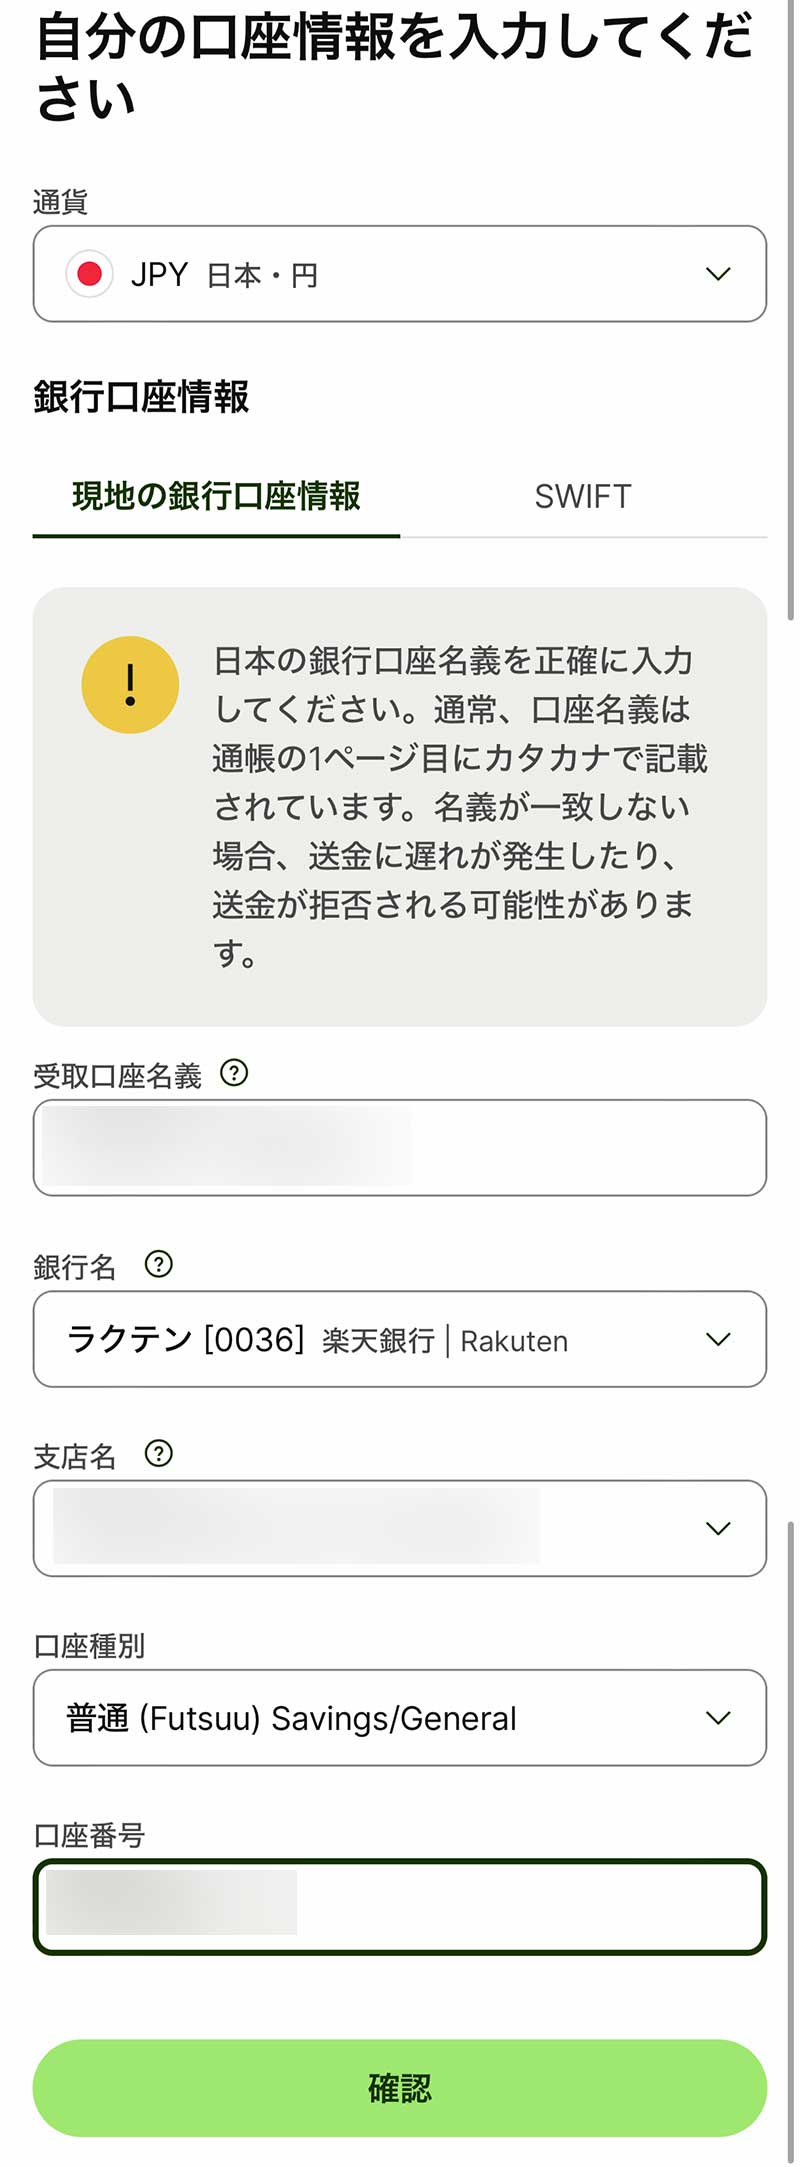 「自分の口座情報を入力してください」画面になるので、「通貨」は「JPY 日本・円」を選択、「銀行口座情報」に日本の金融機関の銀行口座の情報を入力して「確認」ボタンをタップ